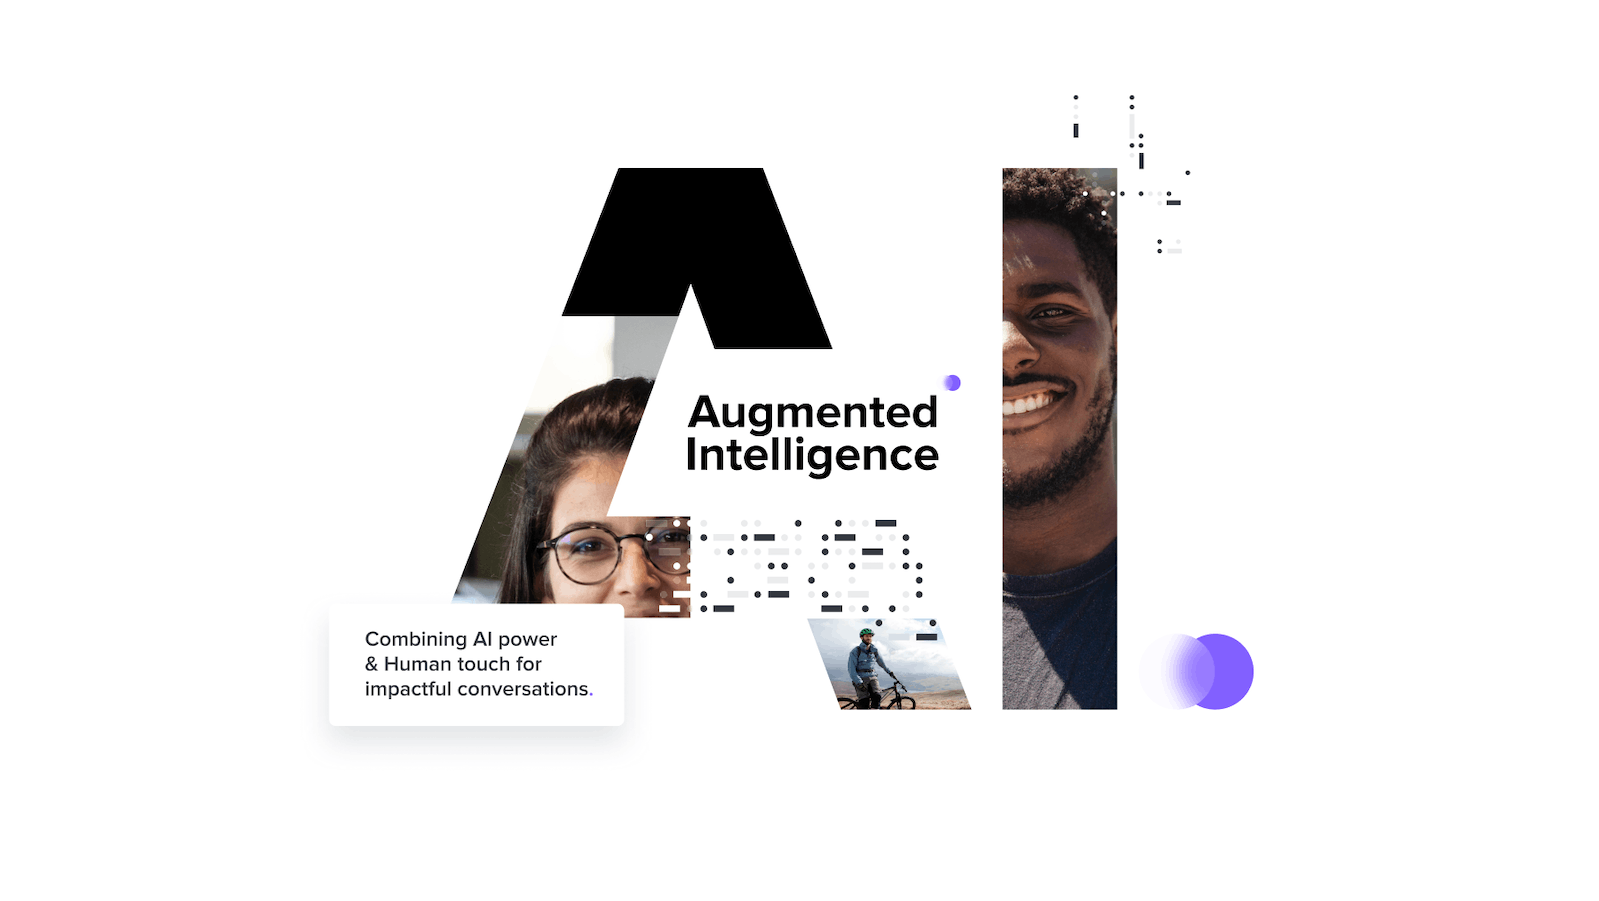 iAdvize lance “Augmented Intelligence” : une solution de collaboration unique entre l’Homme et l’IA pour des conversations à fort impact